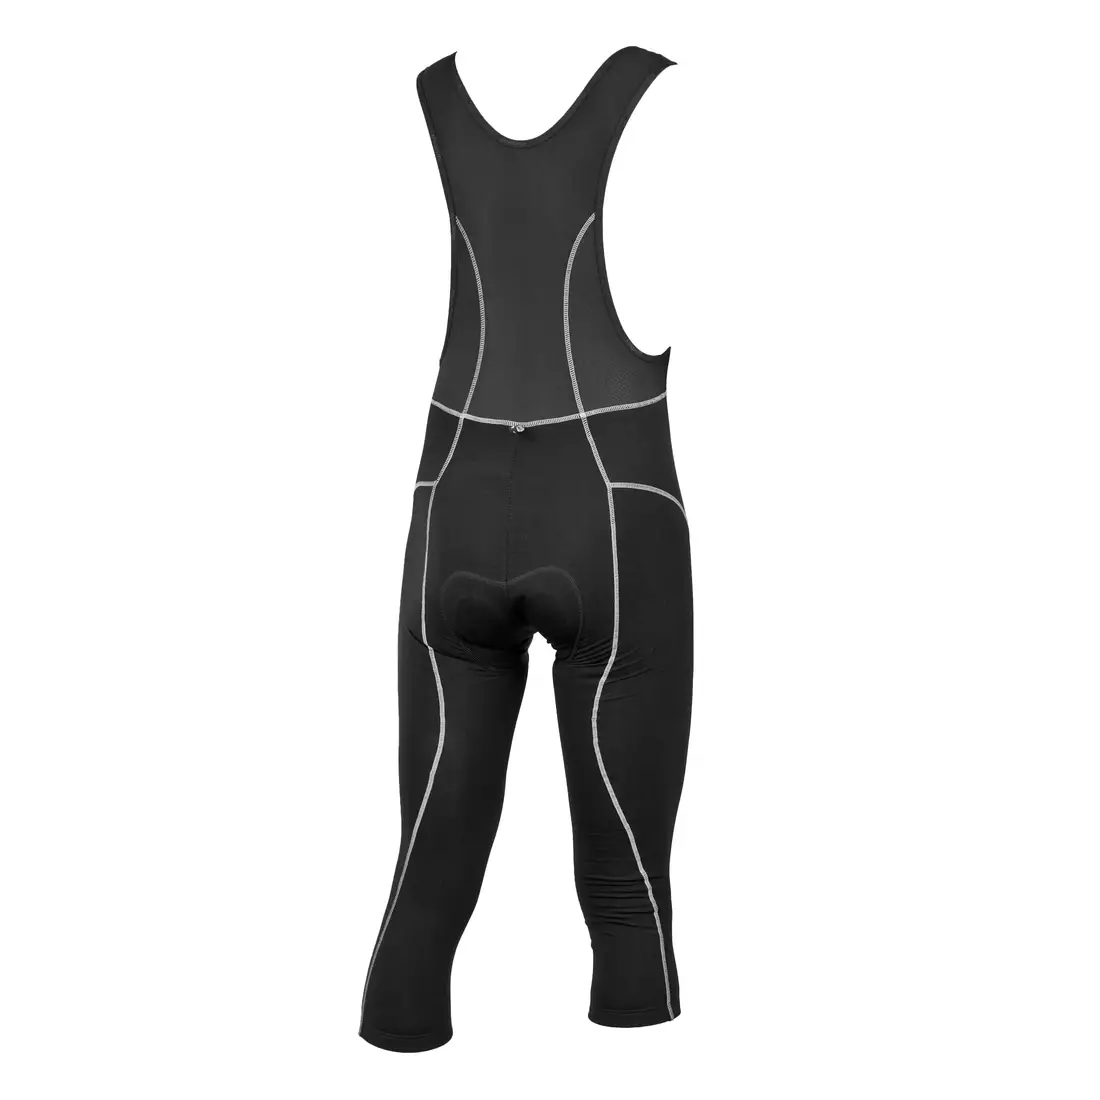 ROGELLI BIKE BAROLO - izolator, pantaloni scurți pentru ciclism 3/4 pentru bărbați, culoare: negru